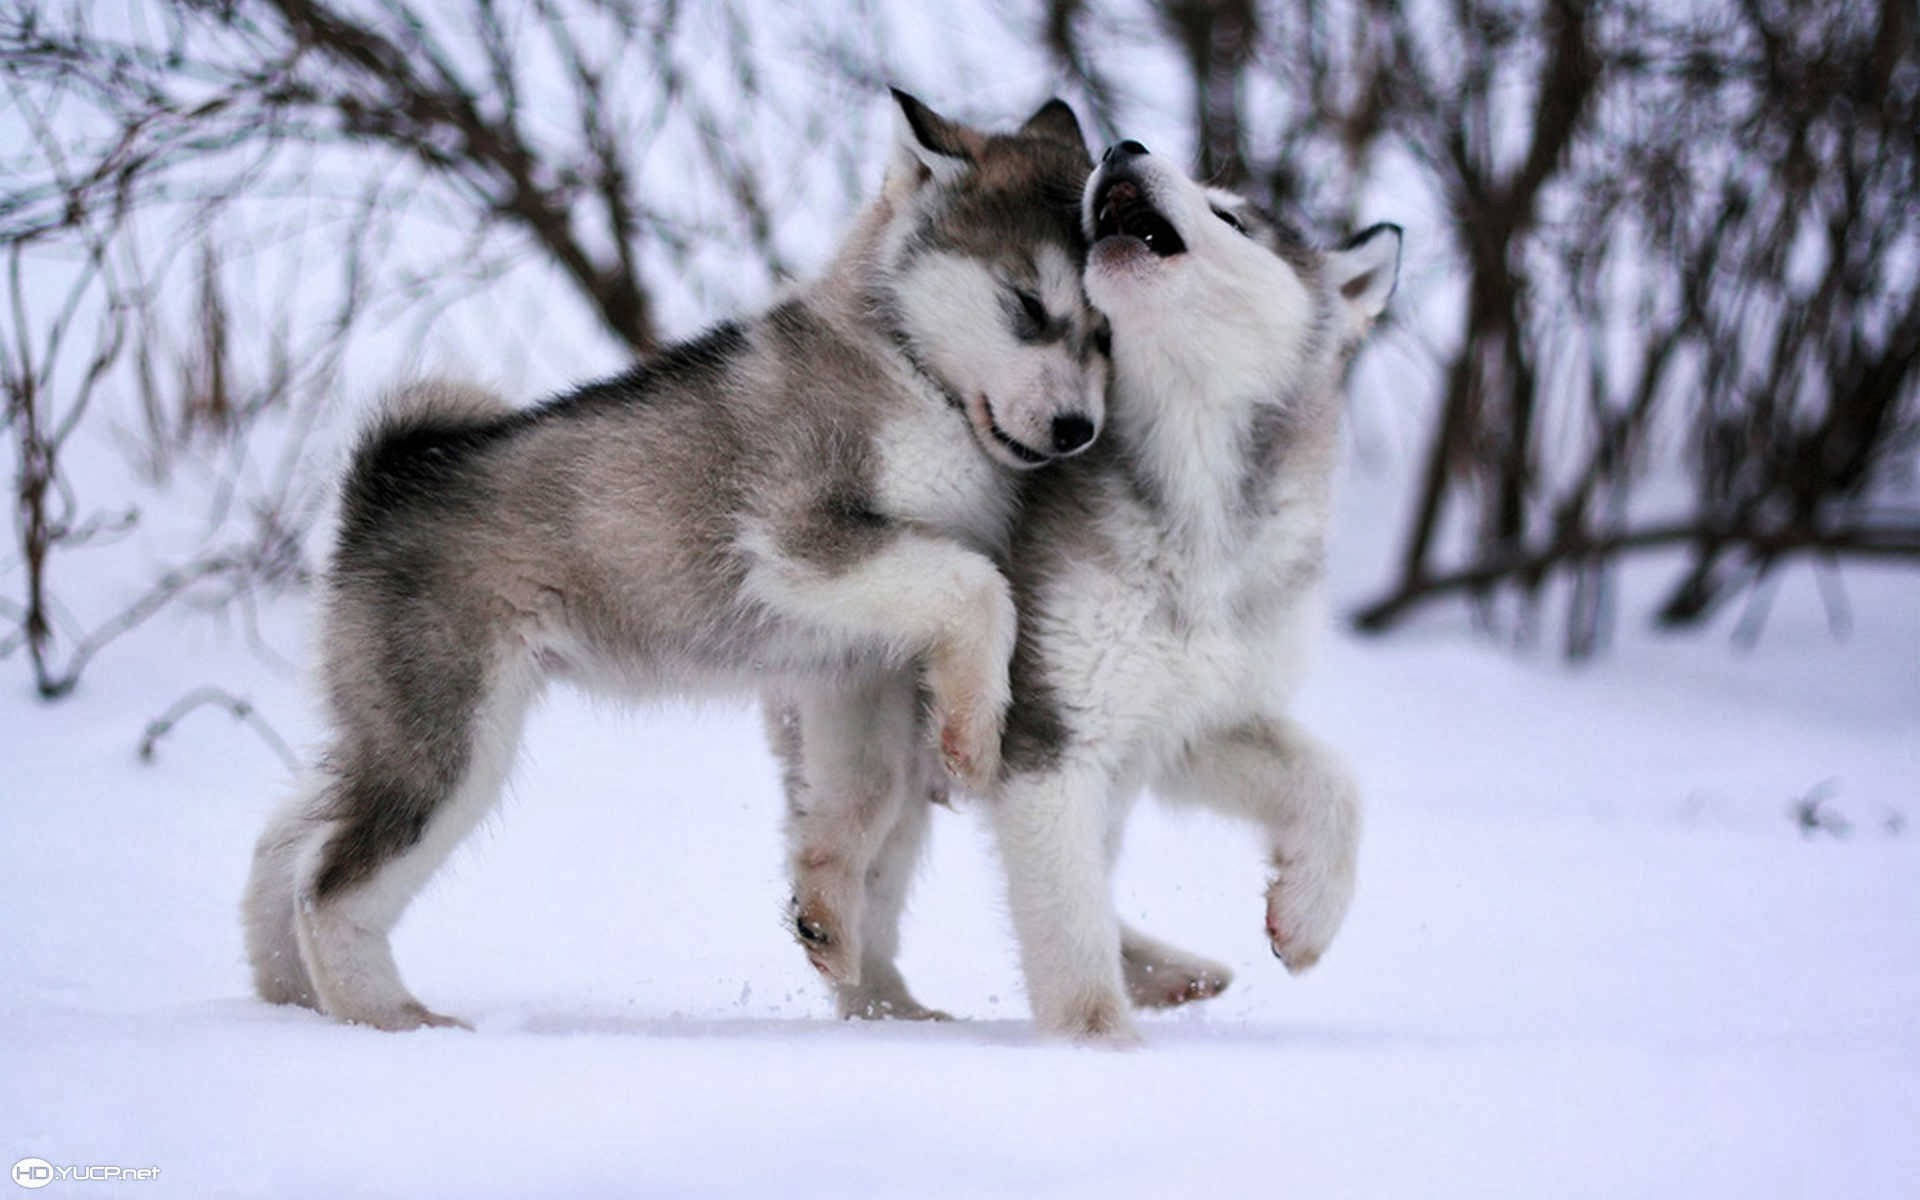 Cute Hd Alaskan Malamute Puppies